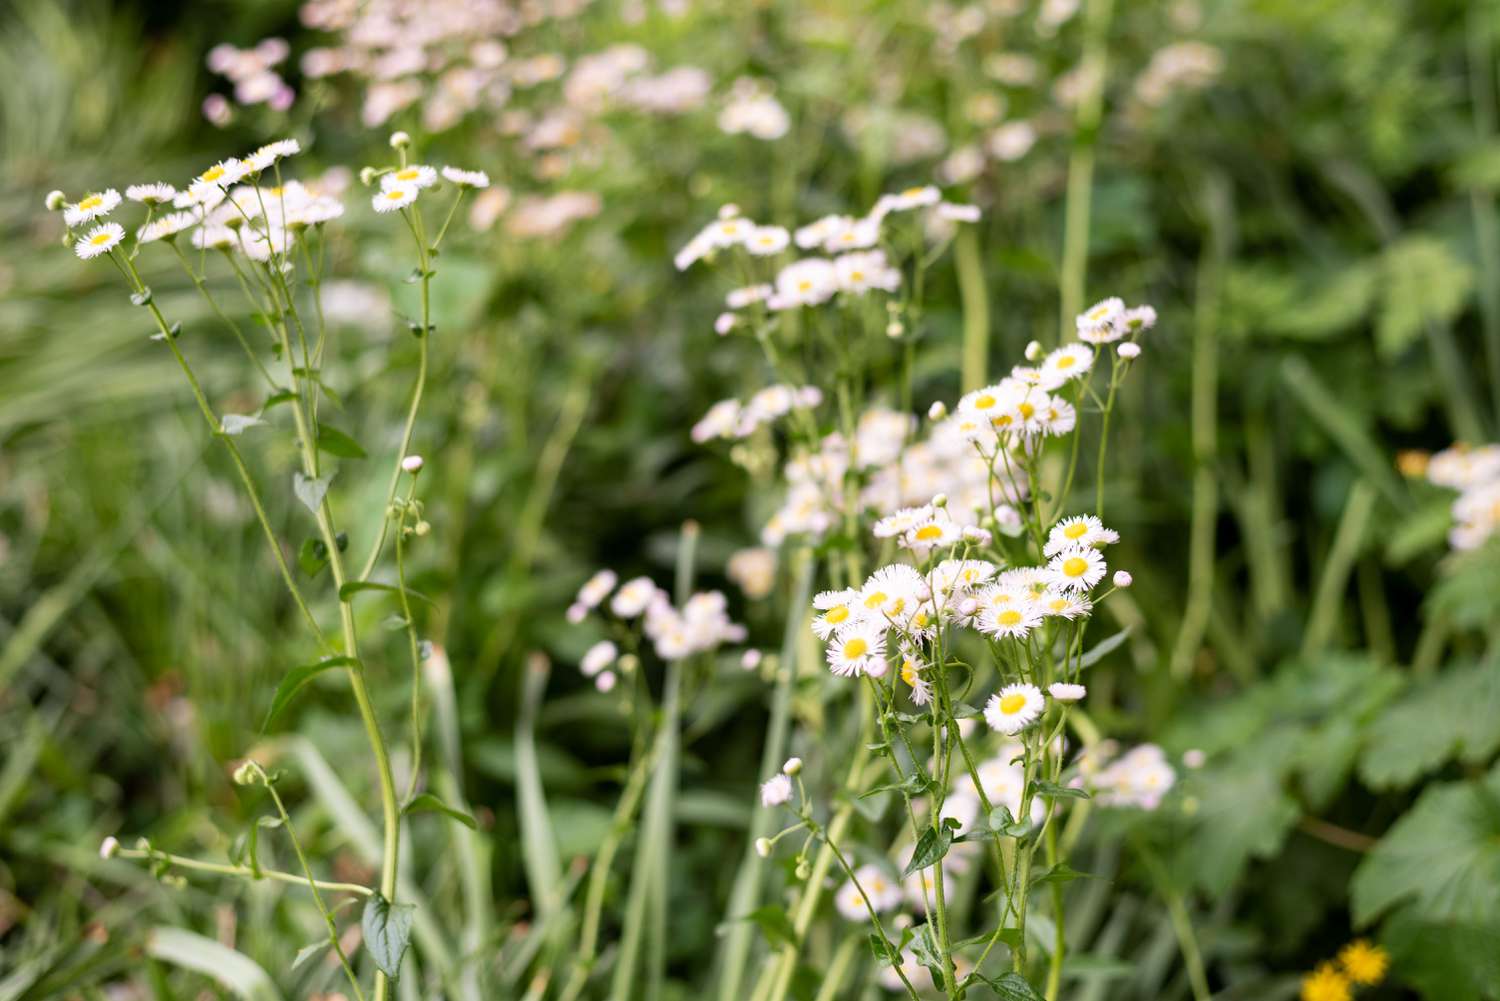 Plante de vergerette mexicaine avec petites fleurs blanches sur hautes tiges fines